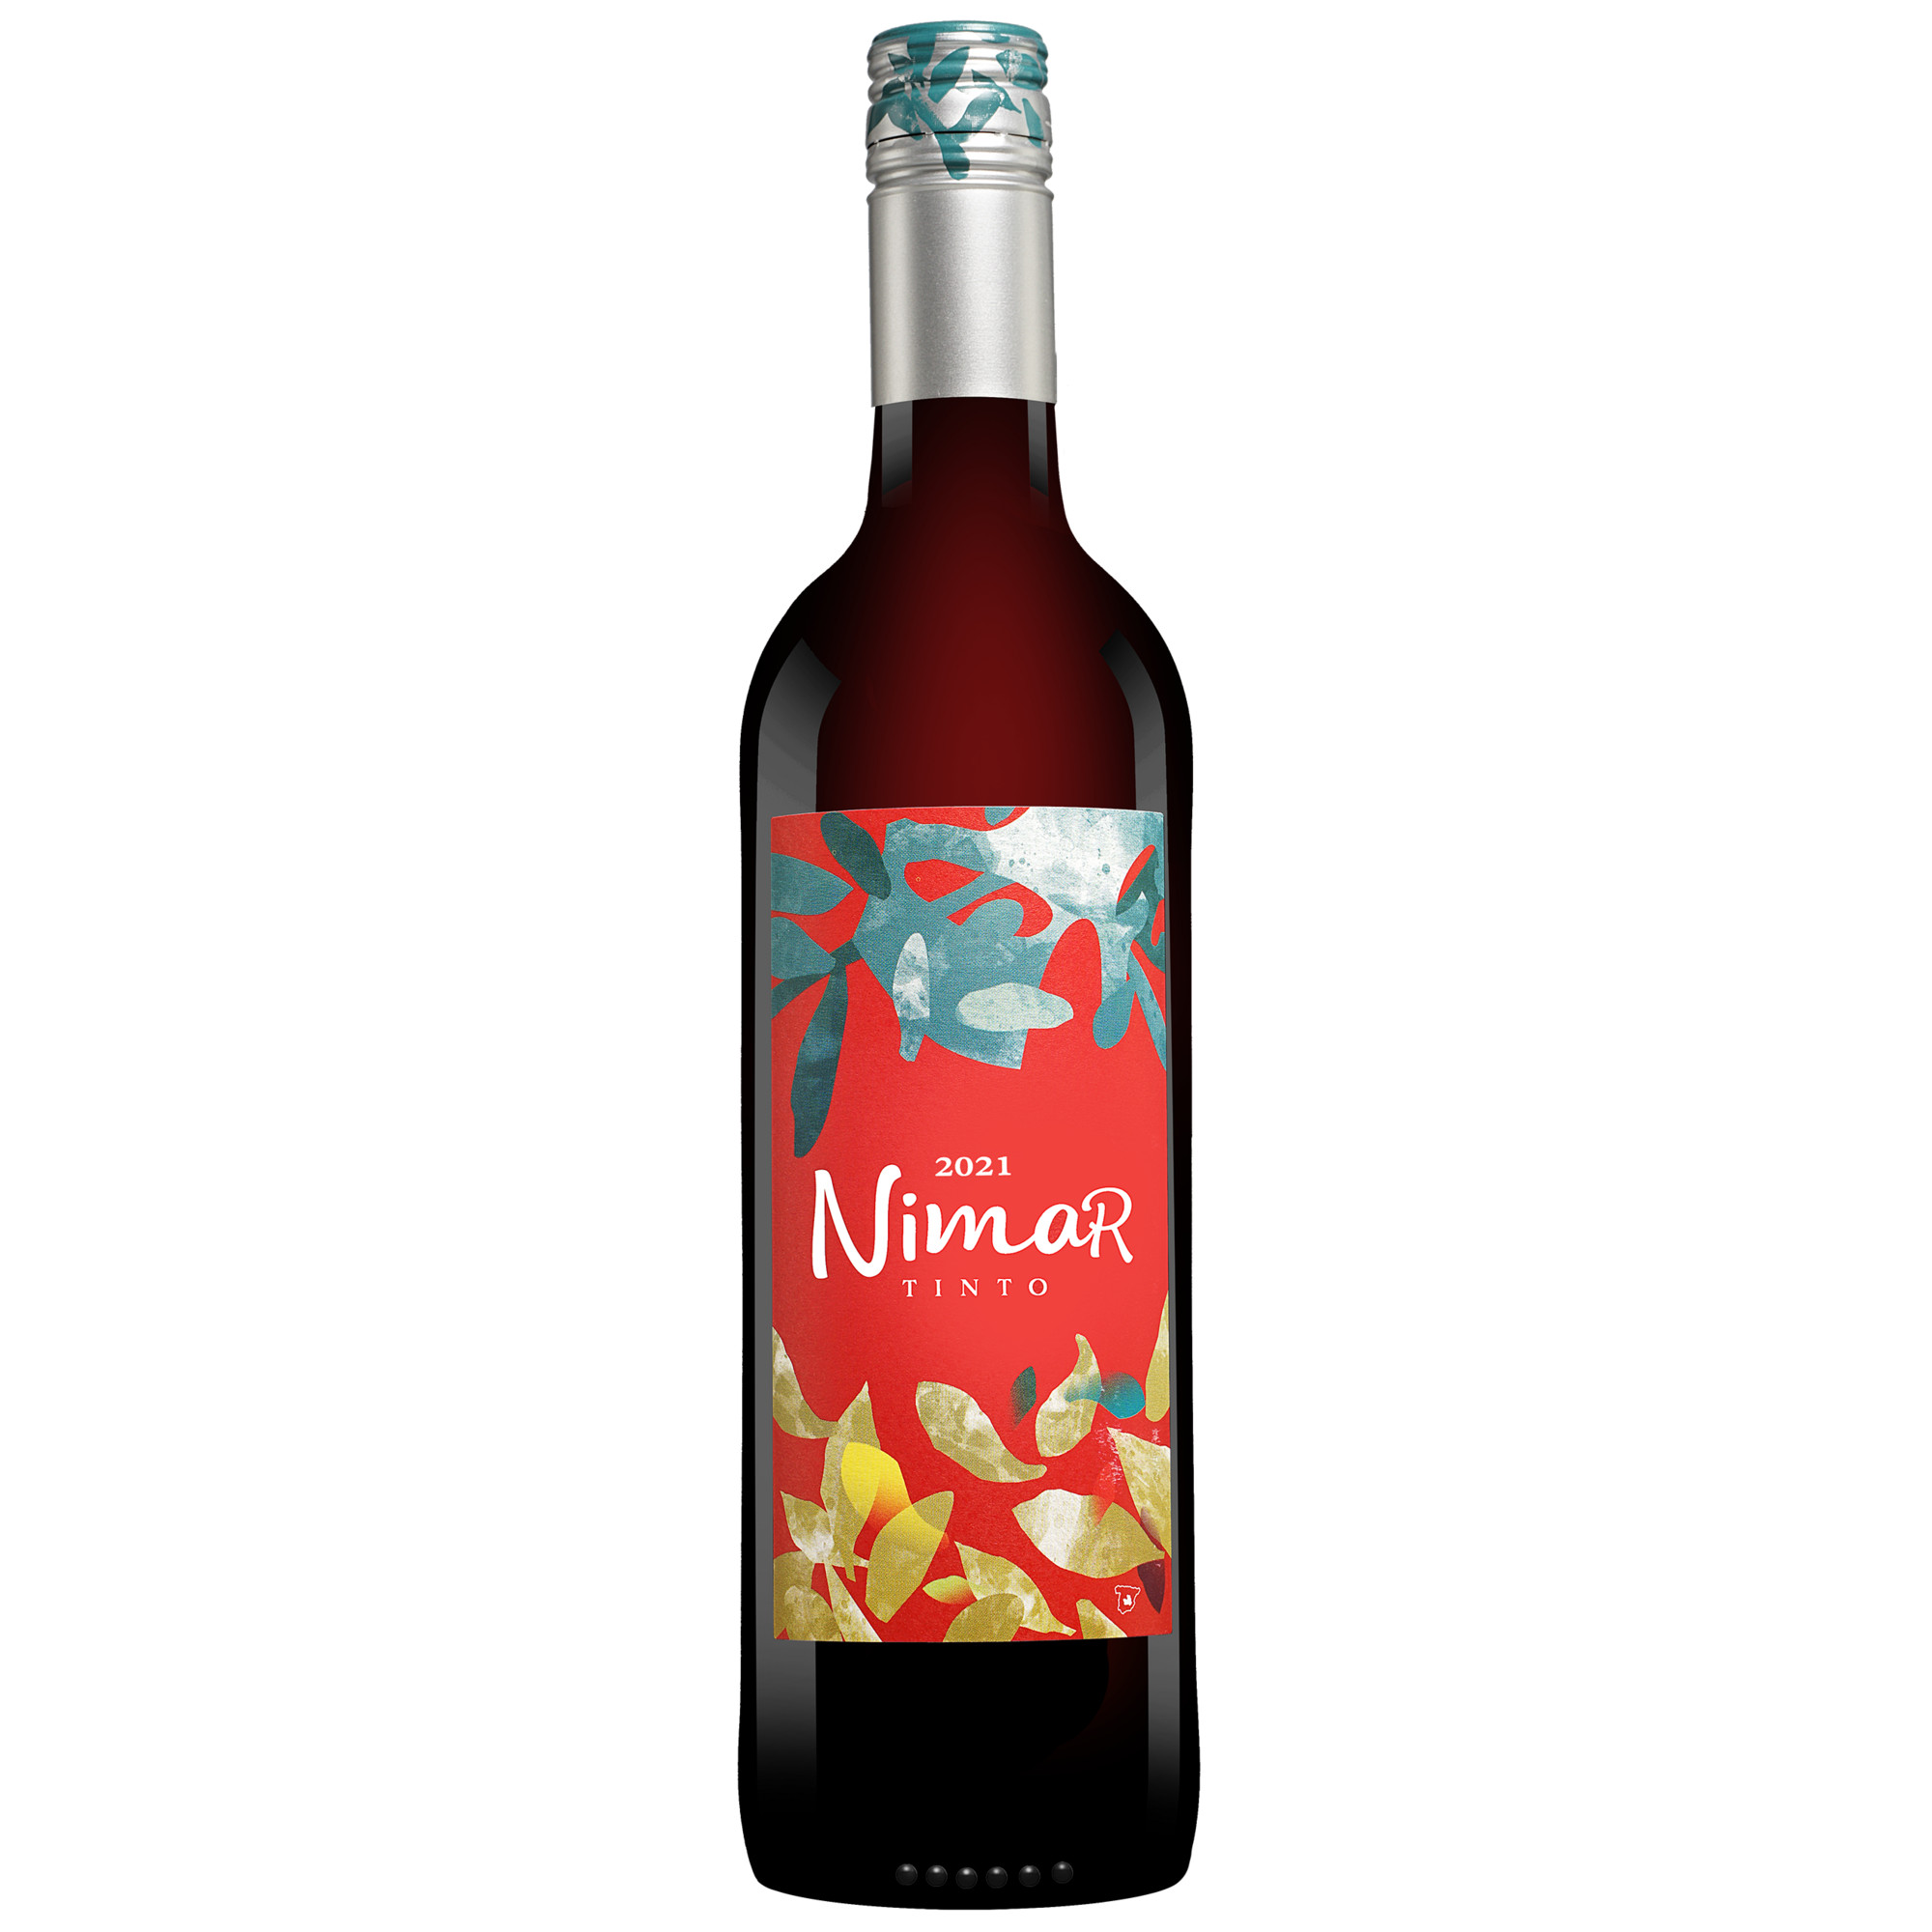 Nimar Tinto 2021  013% Vol. Rotwein Halbtrocken aus Spanien